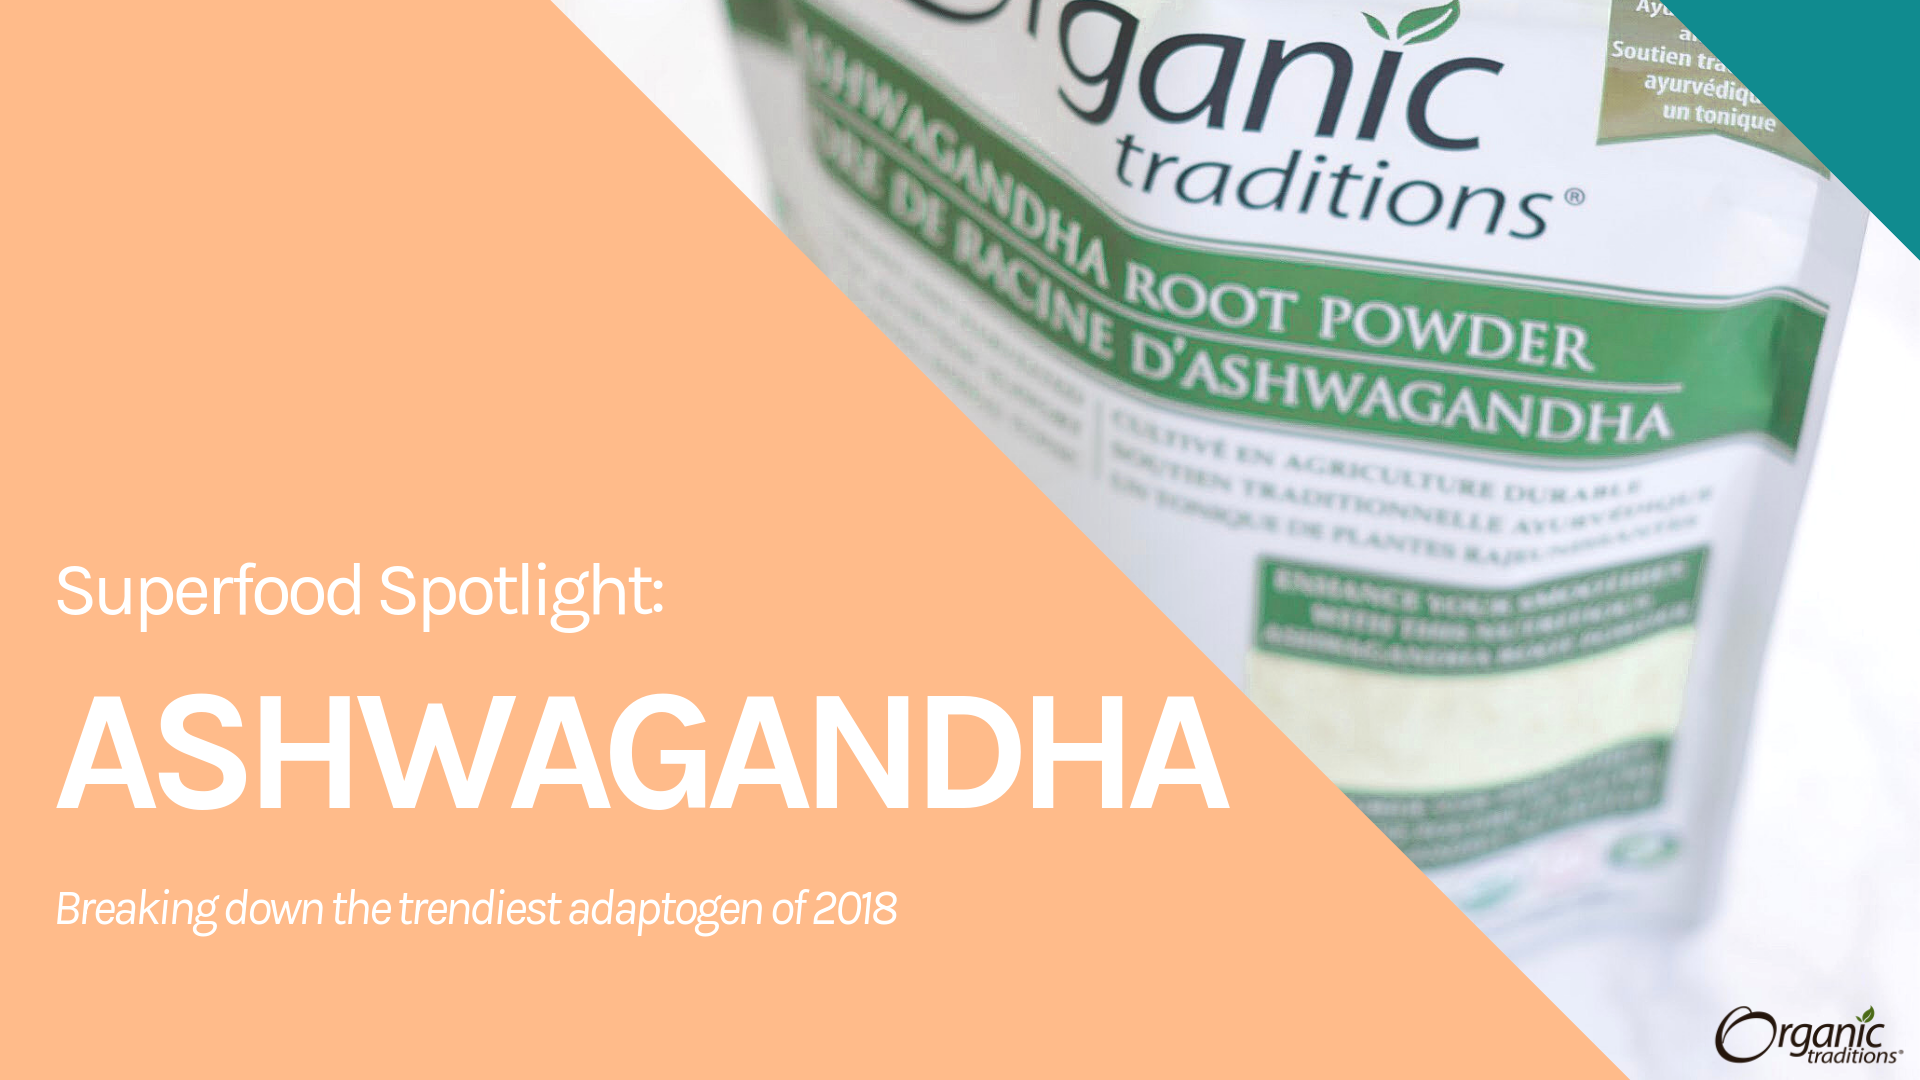 Superfood Spotlight: Ashwagandha